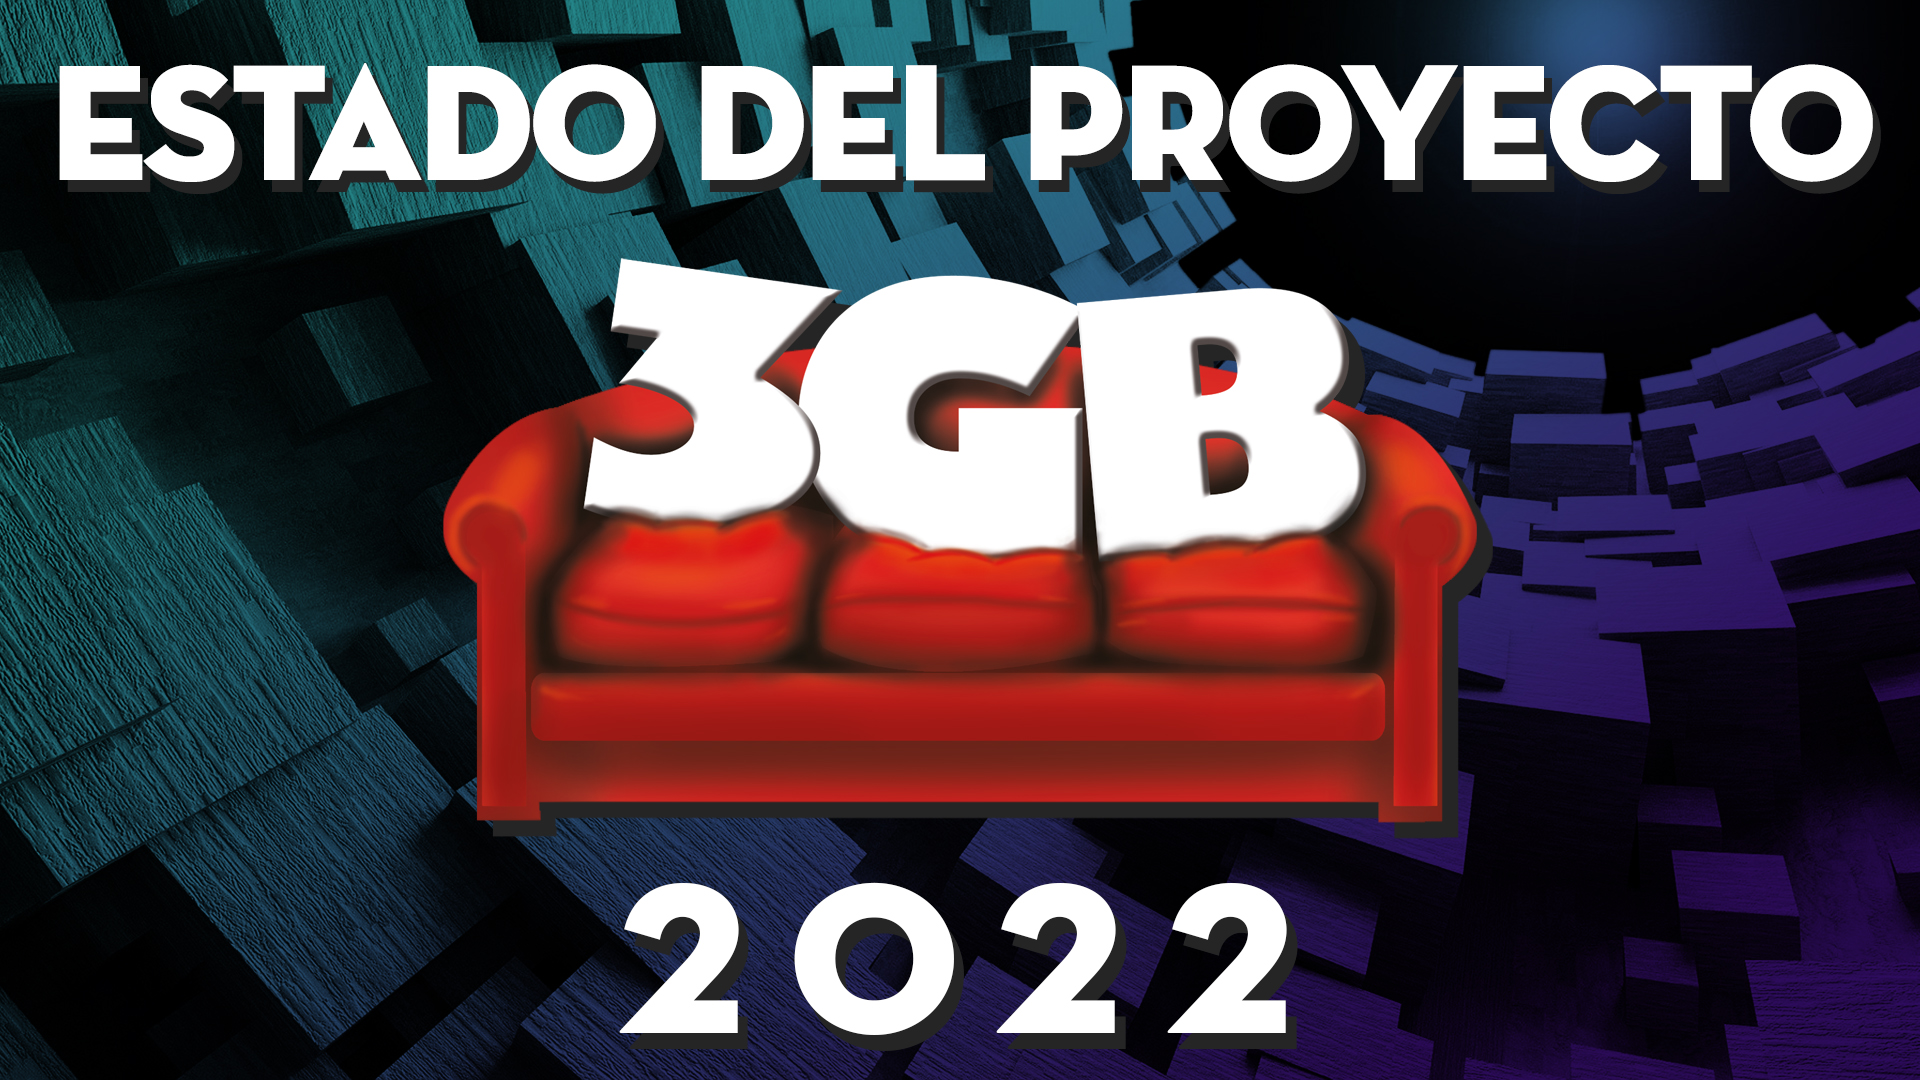 El Estado de 3GB en 2022